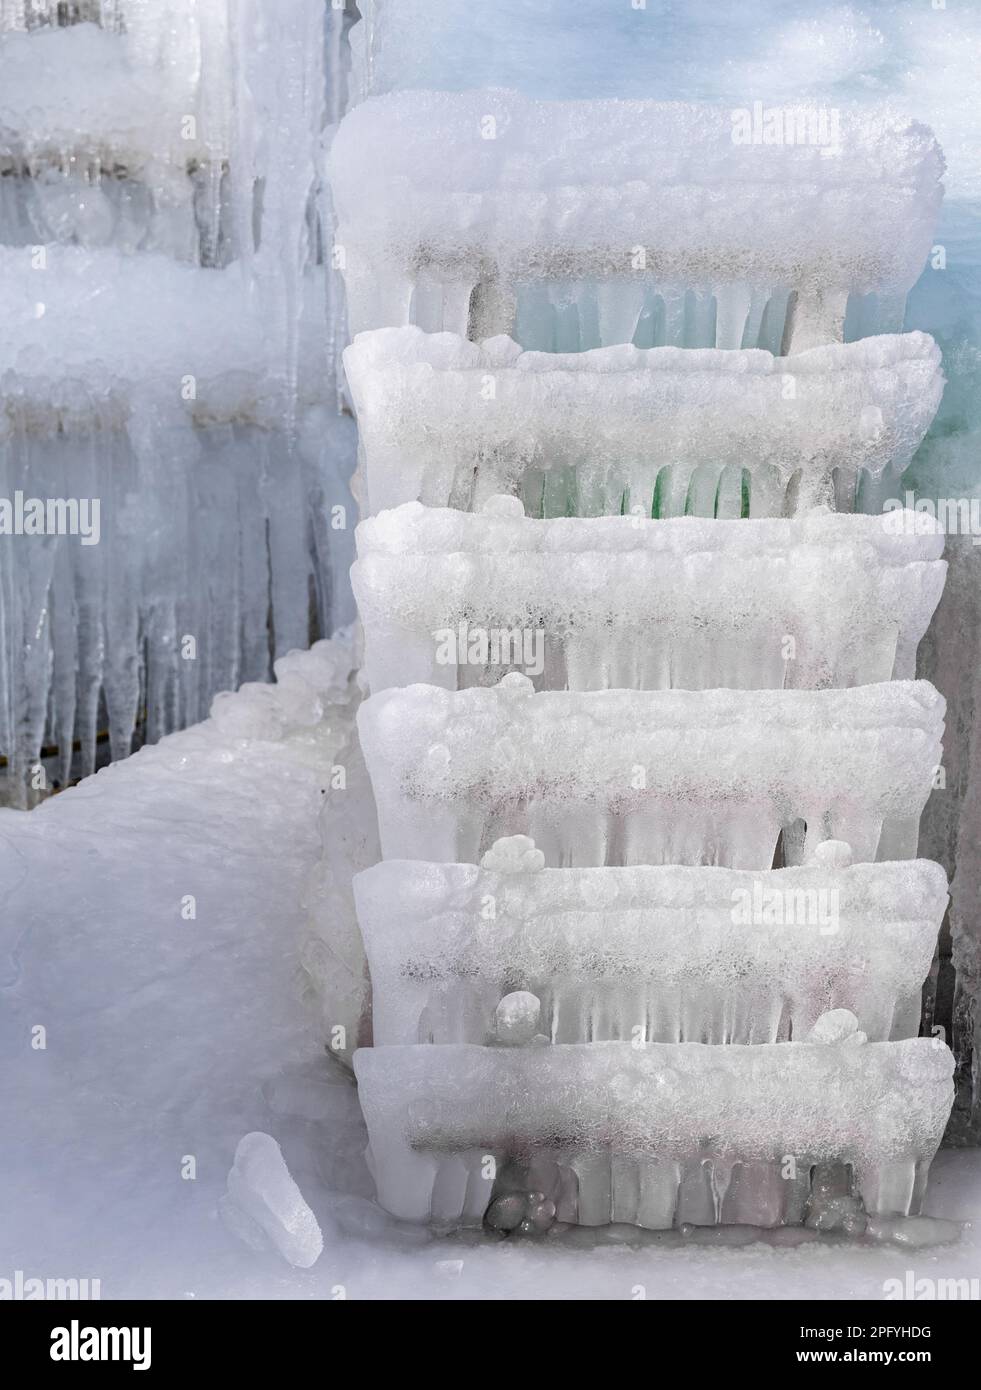 Clima invernale e meteo. Scala in legno coperta da ghiaccio congelato. Inverno, freddo all'esterno. Foto Stock